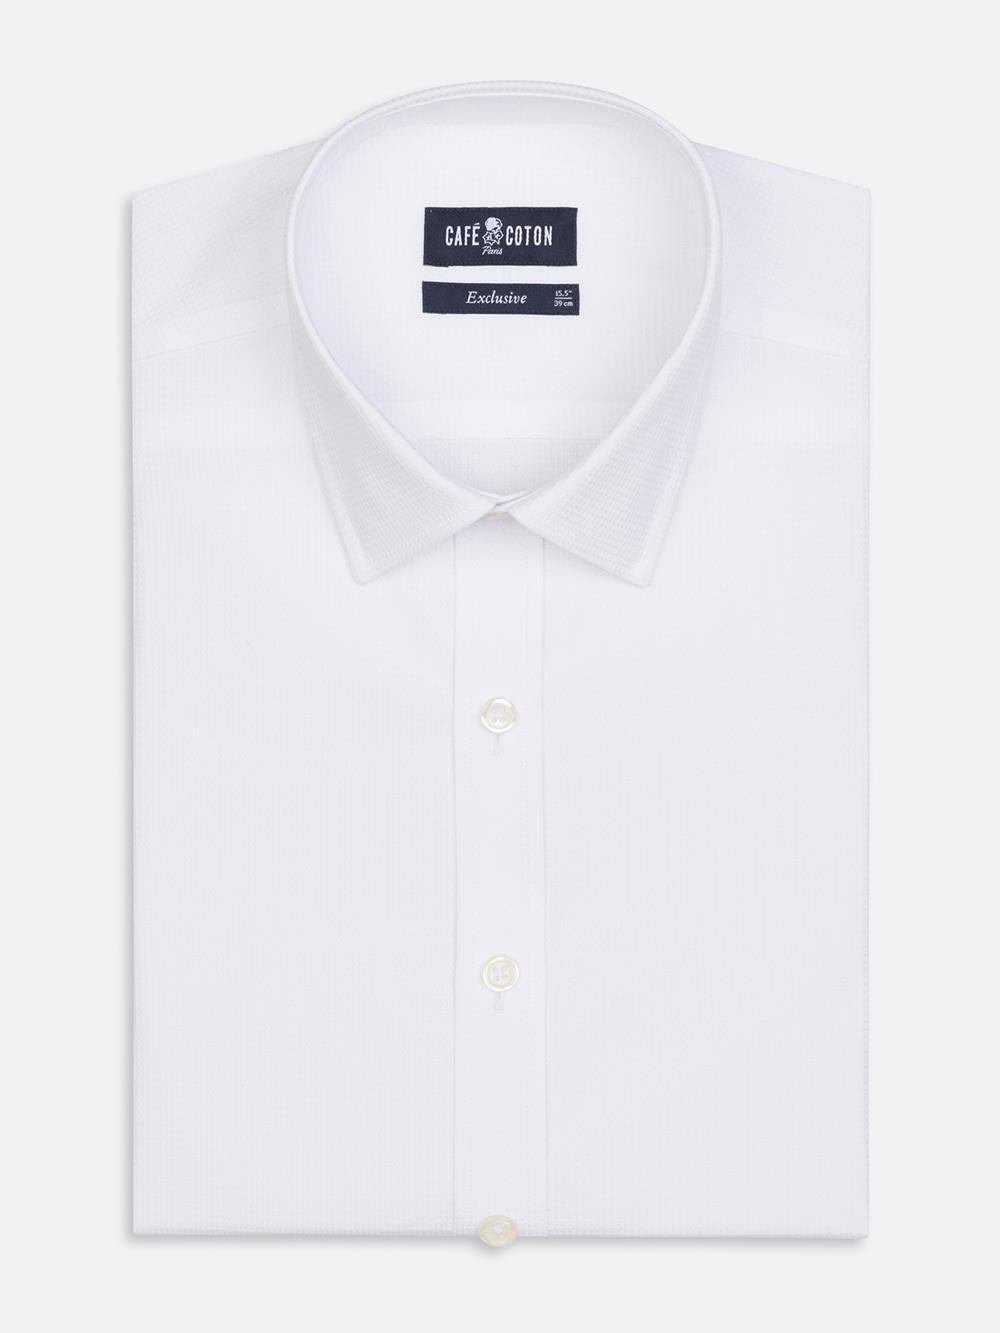 Camisa slim fit Aiden con textura blanca